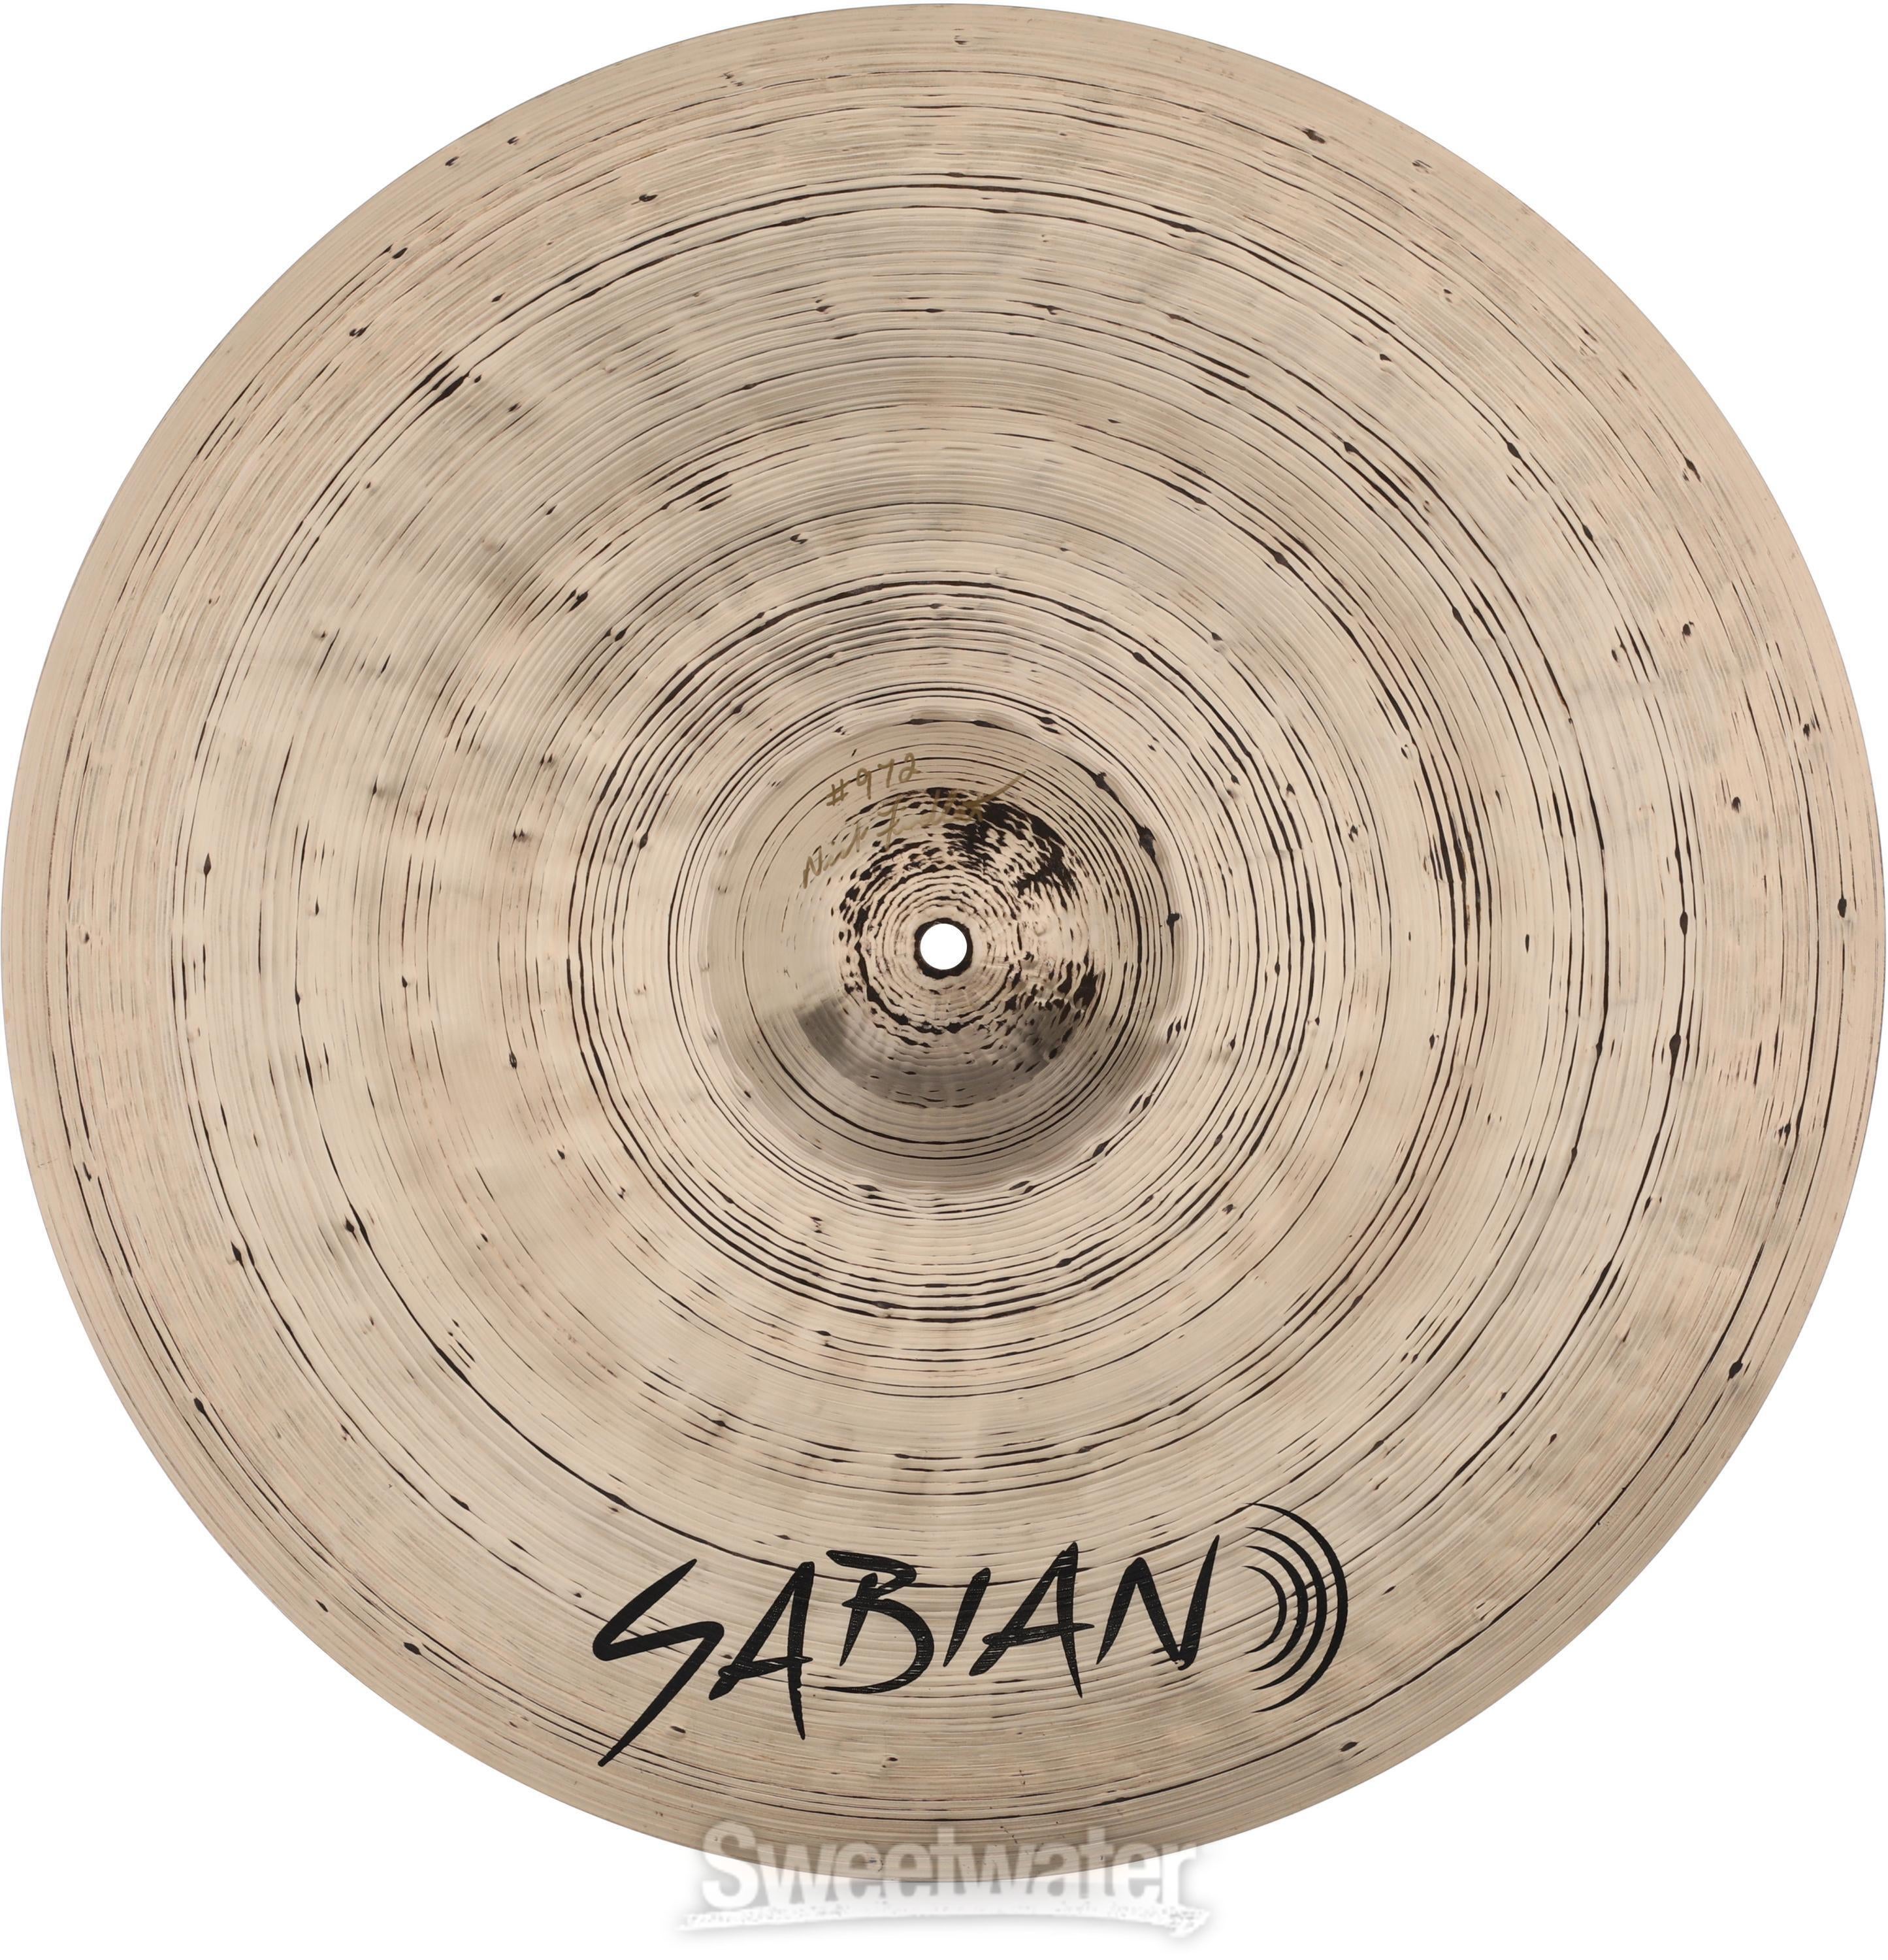 Sabian 20 inch Artisan Elite Crash/Ride Cymbal | Sweetwater